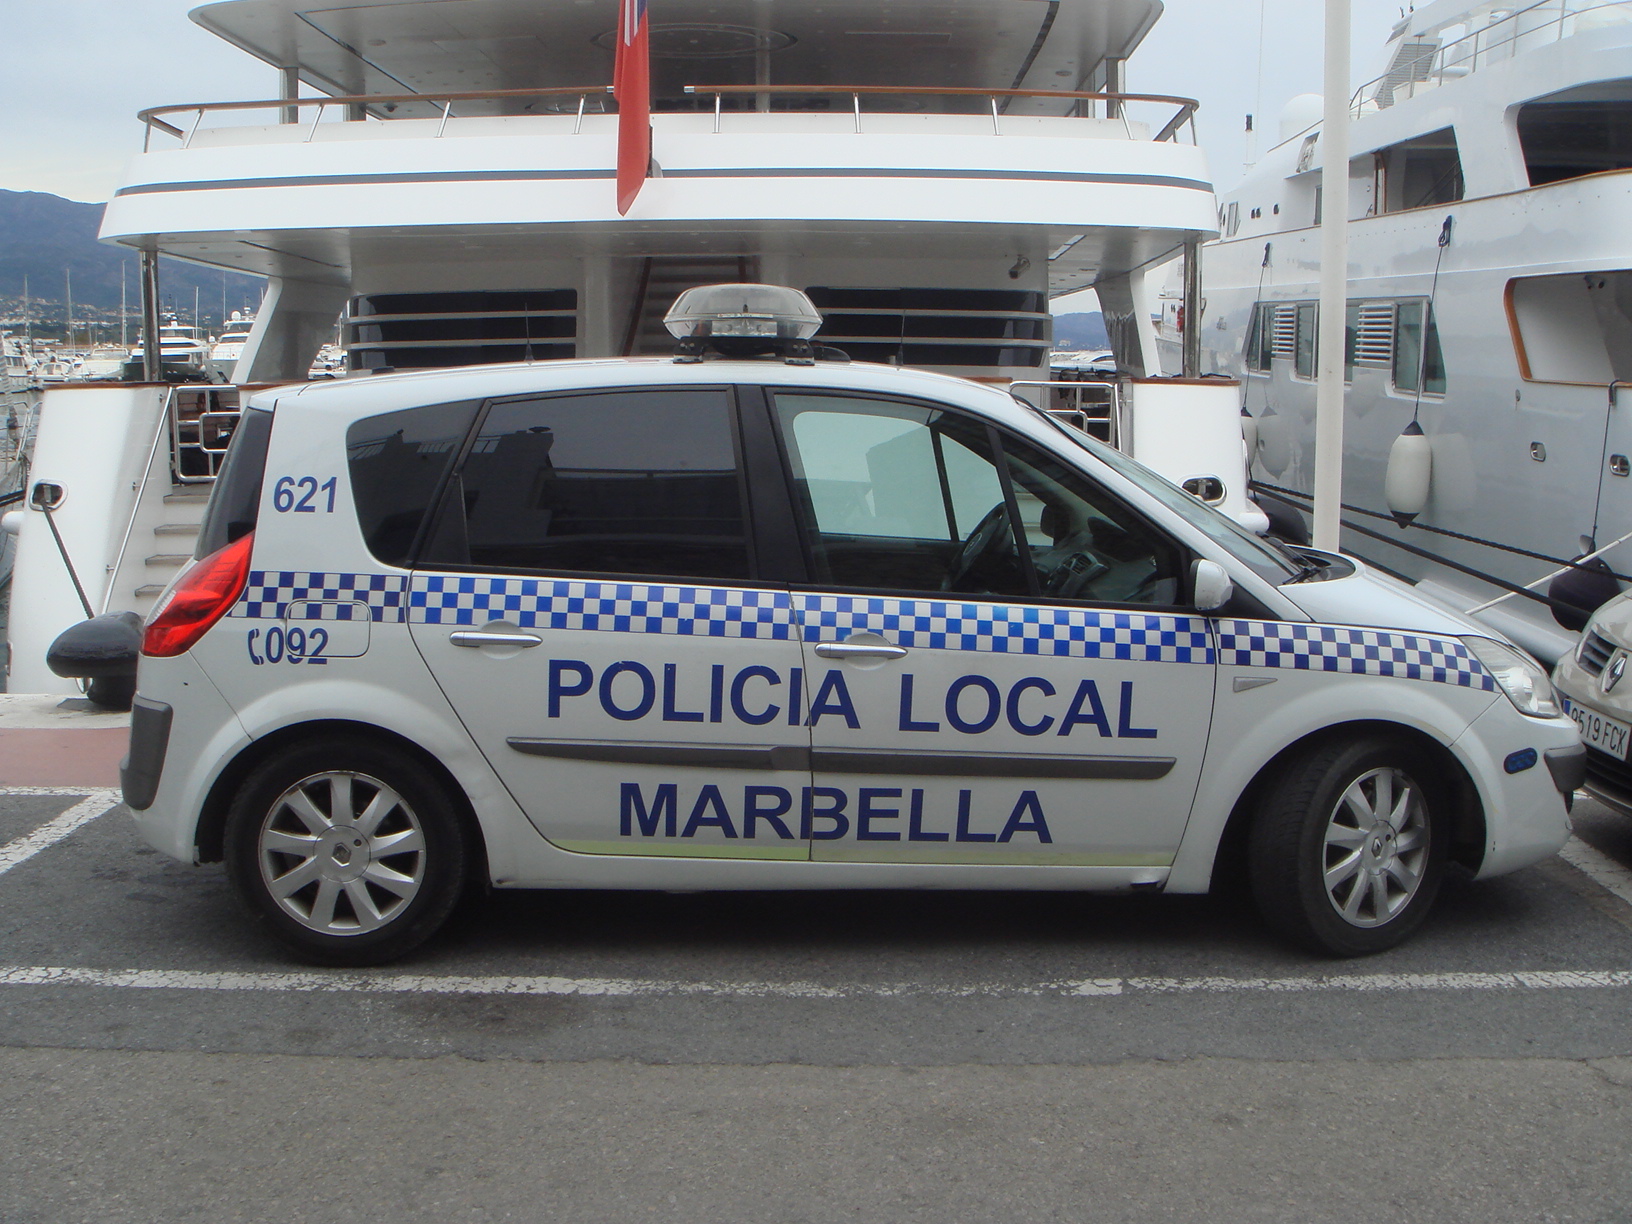 Policía Local Marbella (1)